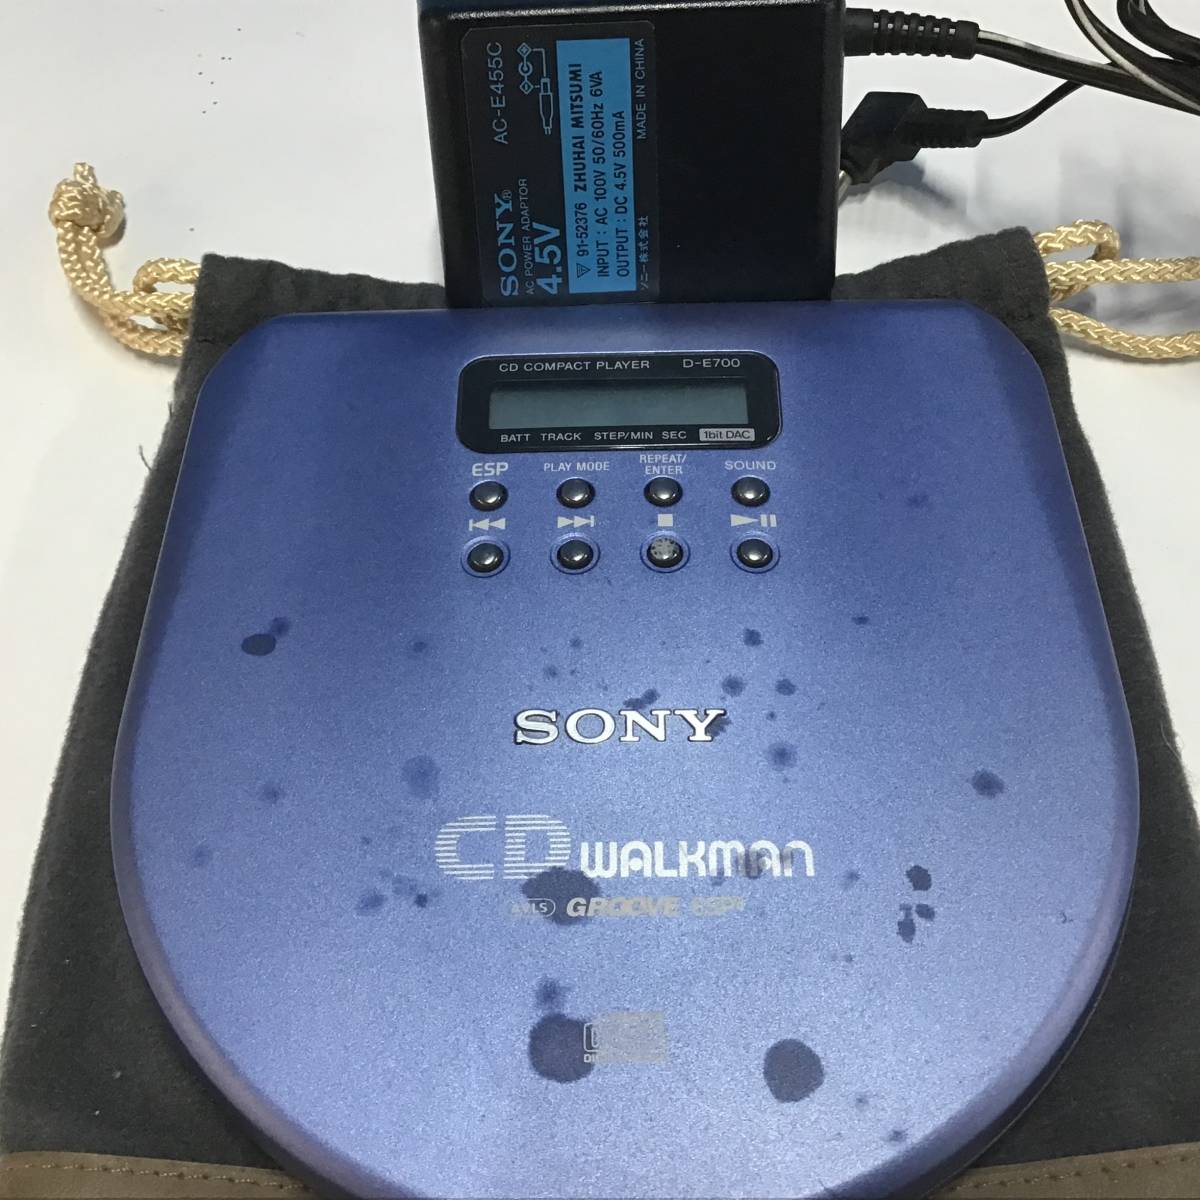 SONY ソニー ポータブル CDプレーヤー D-E700 通電OK 読みより 再生NG ジャンク扱いの画像1